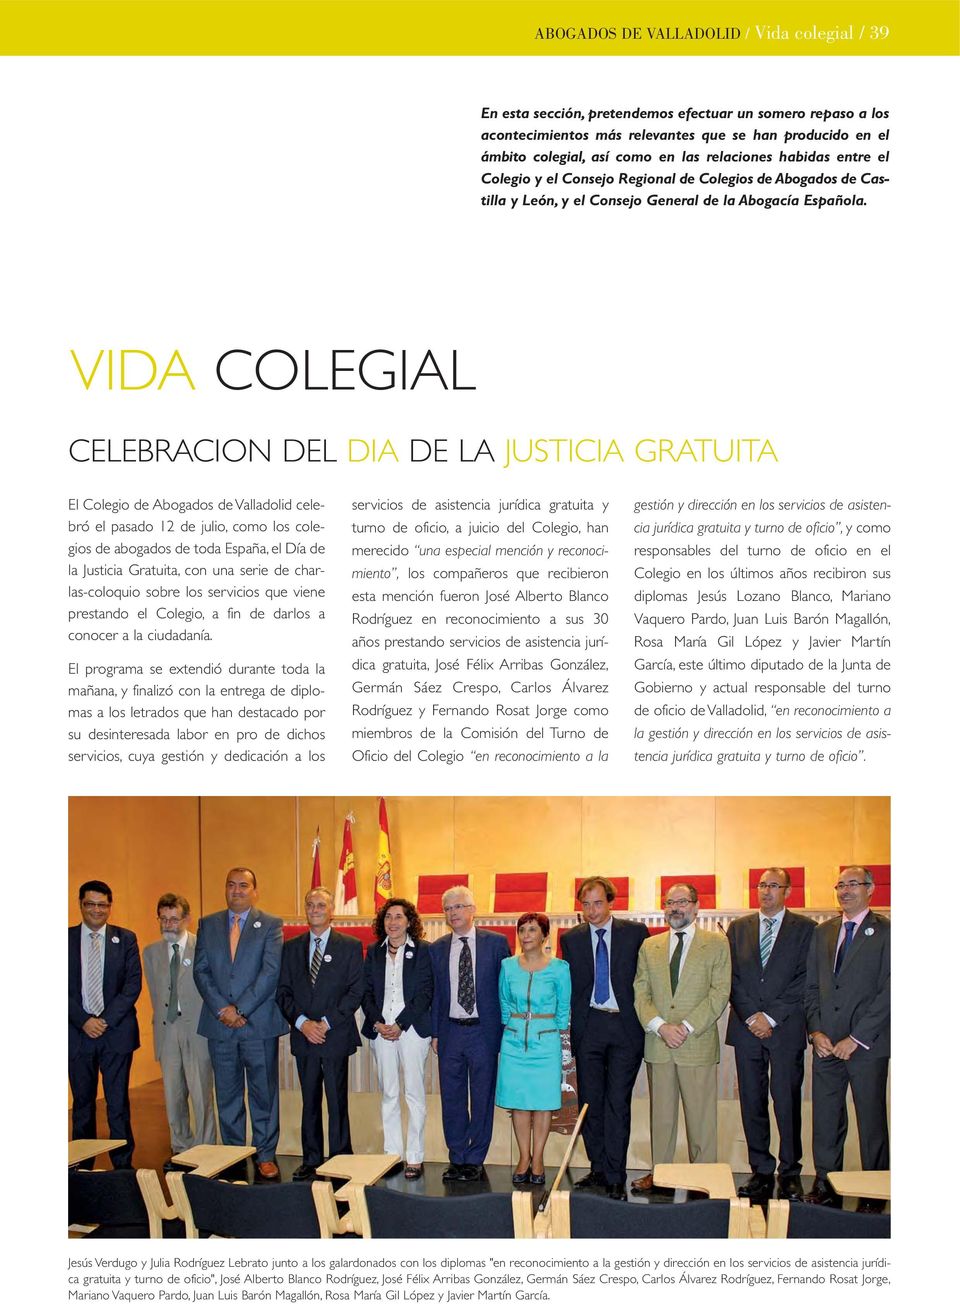 VIDA COLEGIAL CELEBRACION DEL DIA DE LA JUSTICIA GRATUITA El Colegio de Abogados de Valladolid celebró el pasado 12 de julio, como los colegios de abogados de toda España, el Día de la Justicia